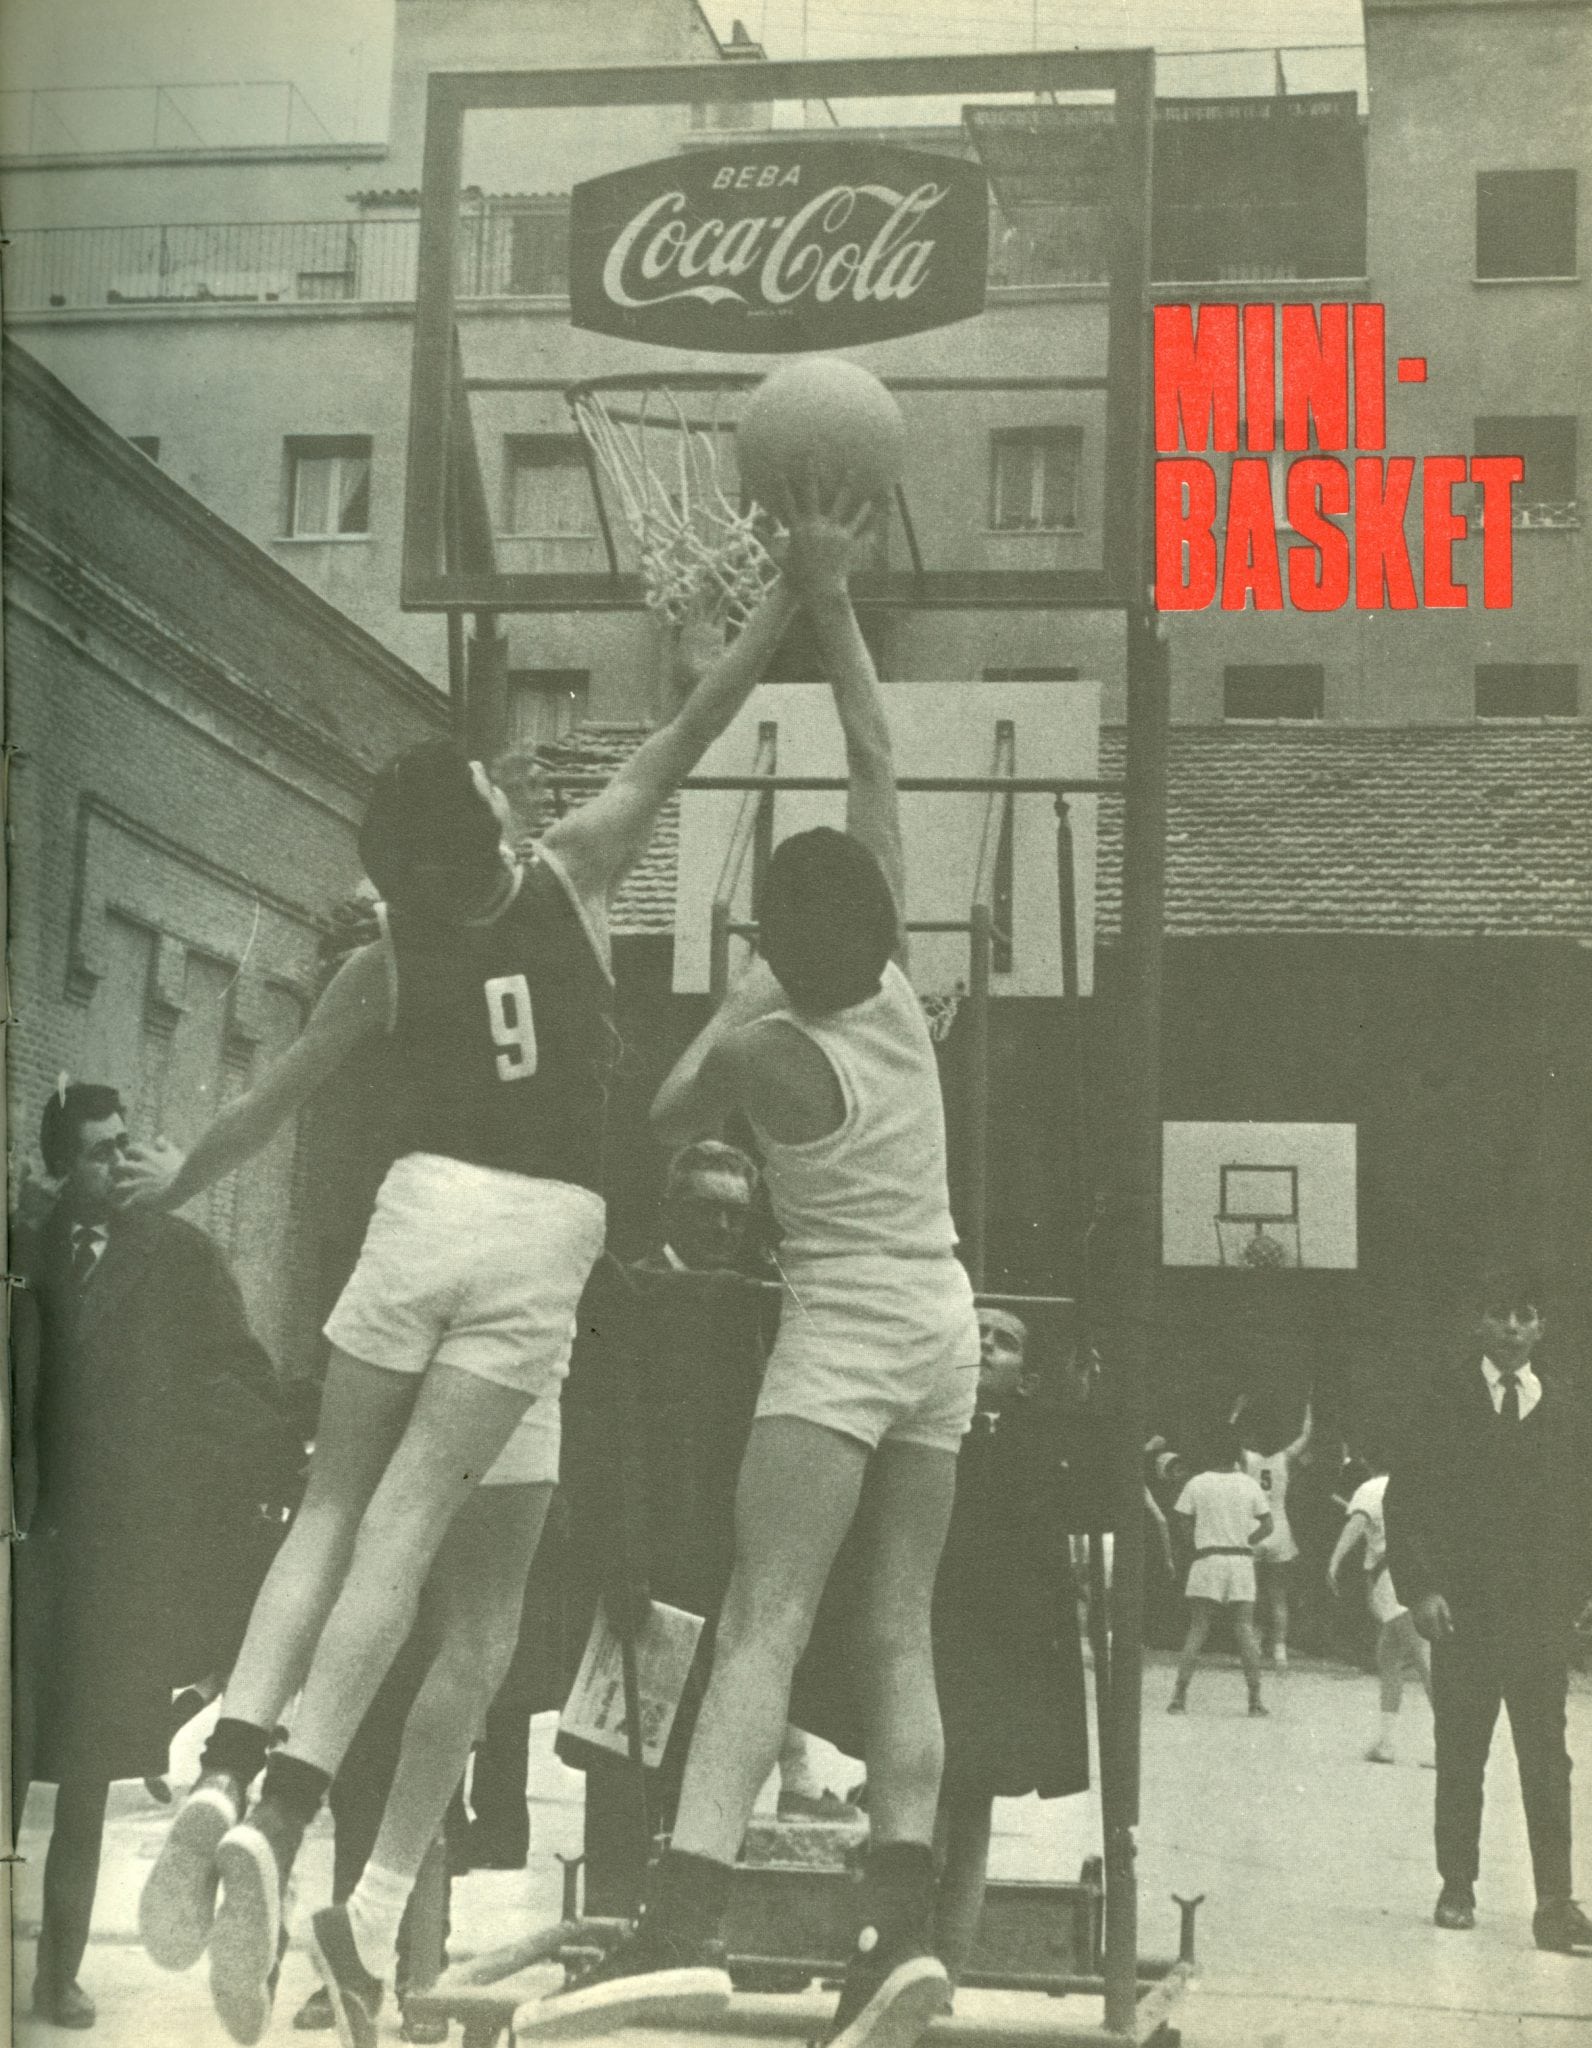 En 1965 surge la revista MINI-BASKET que impulsó este deporte en España.